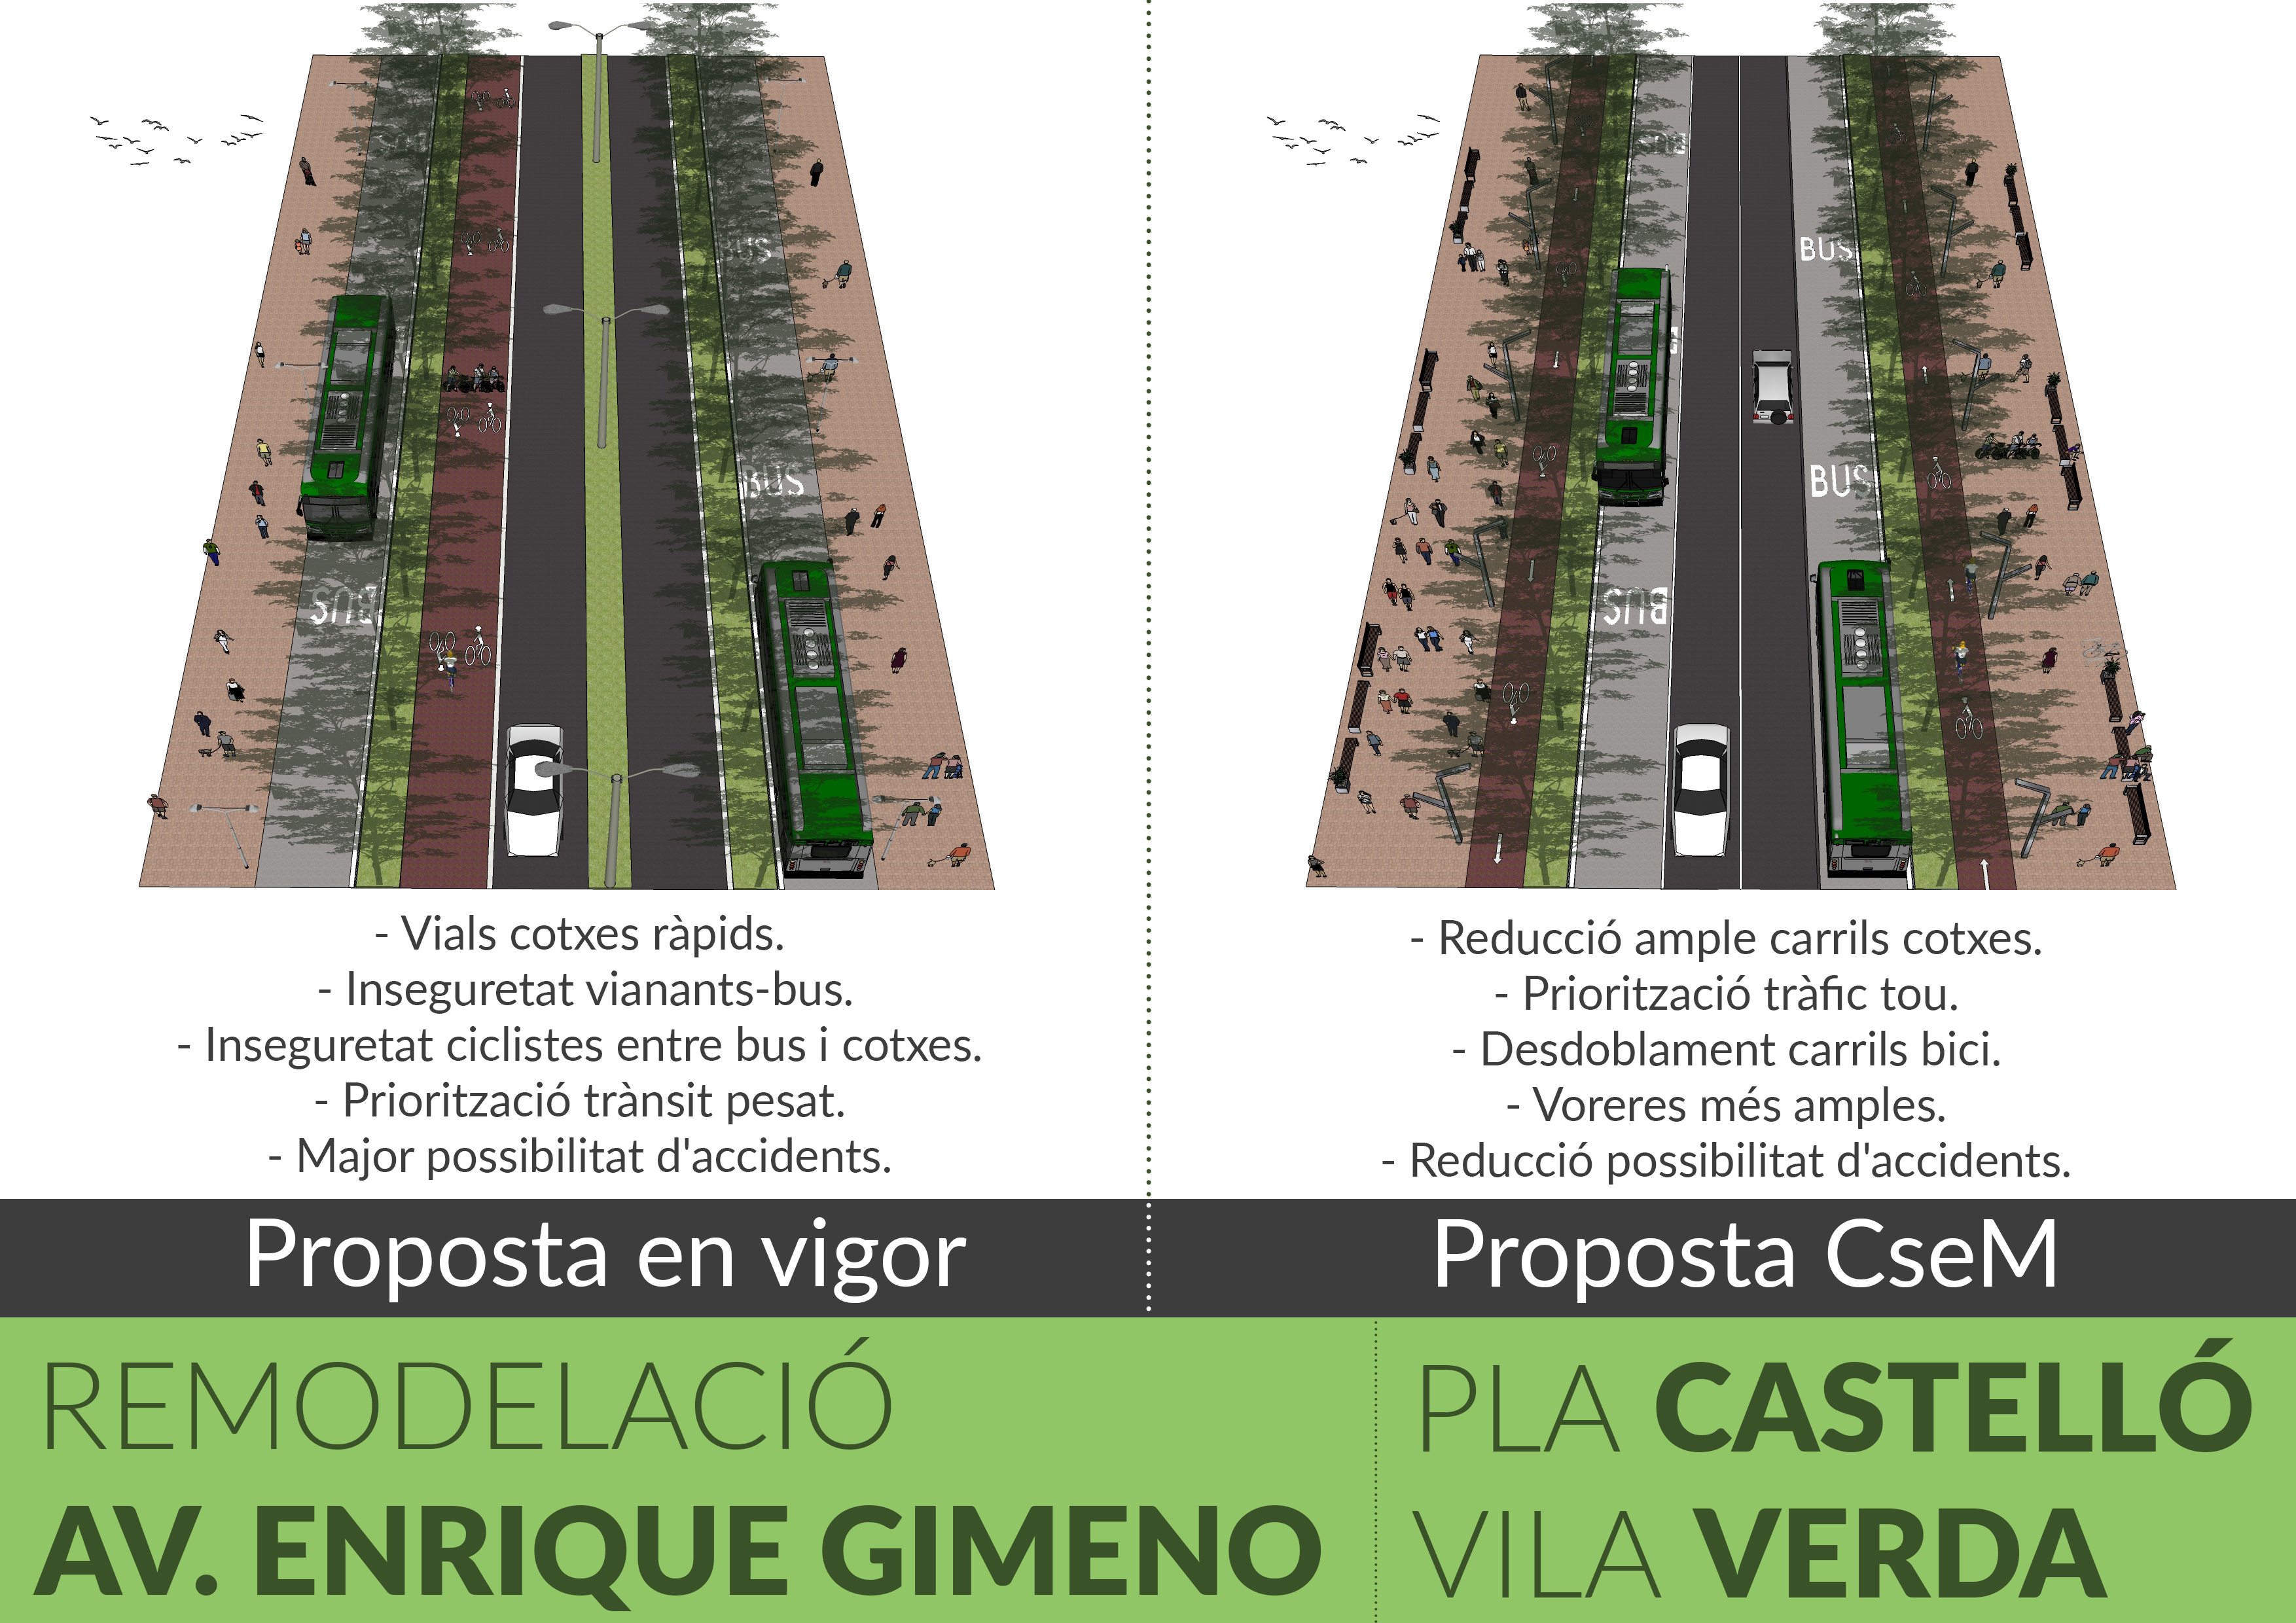 Volem Prioritzar La Seguretat I El Trànsit Tou En La Remodelació De L’Avinguda Enrique Gimeno